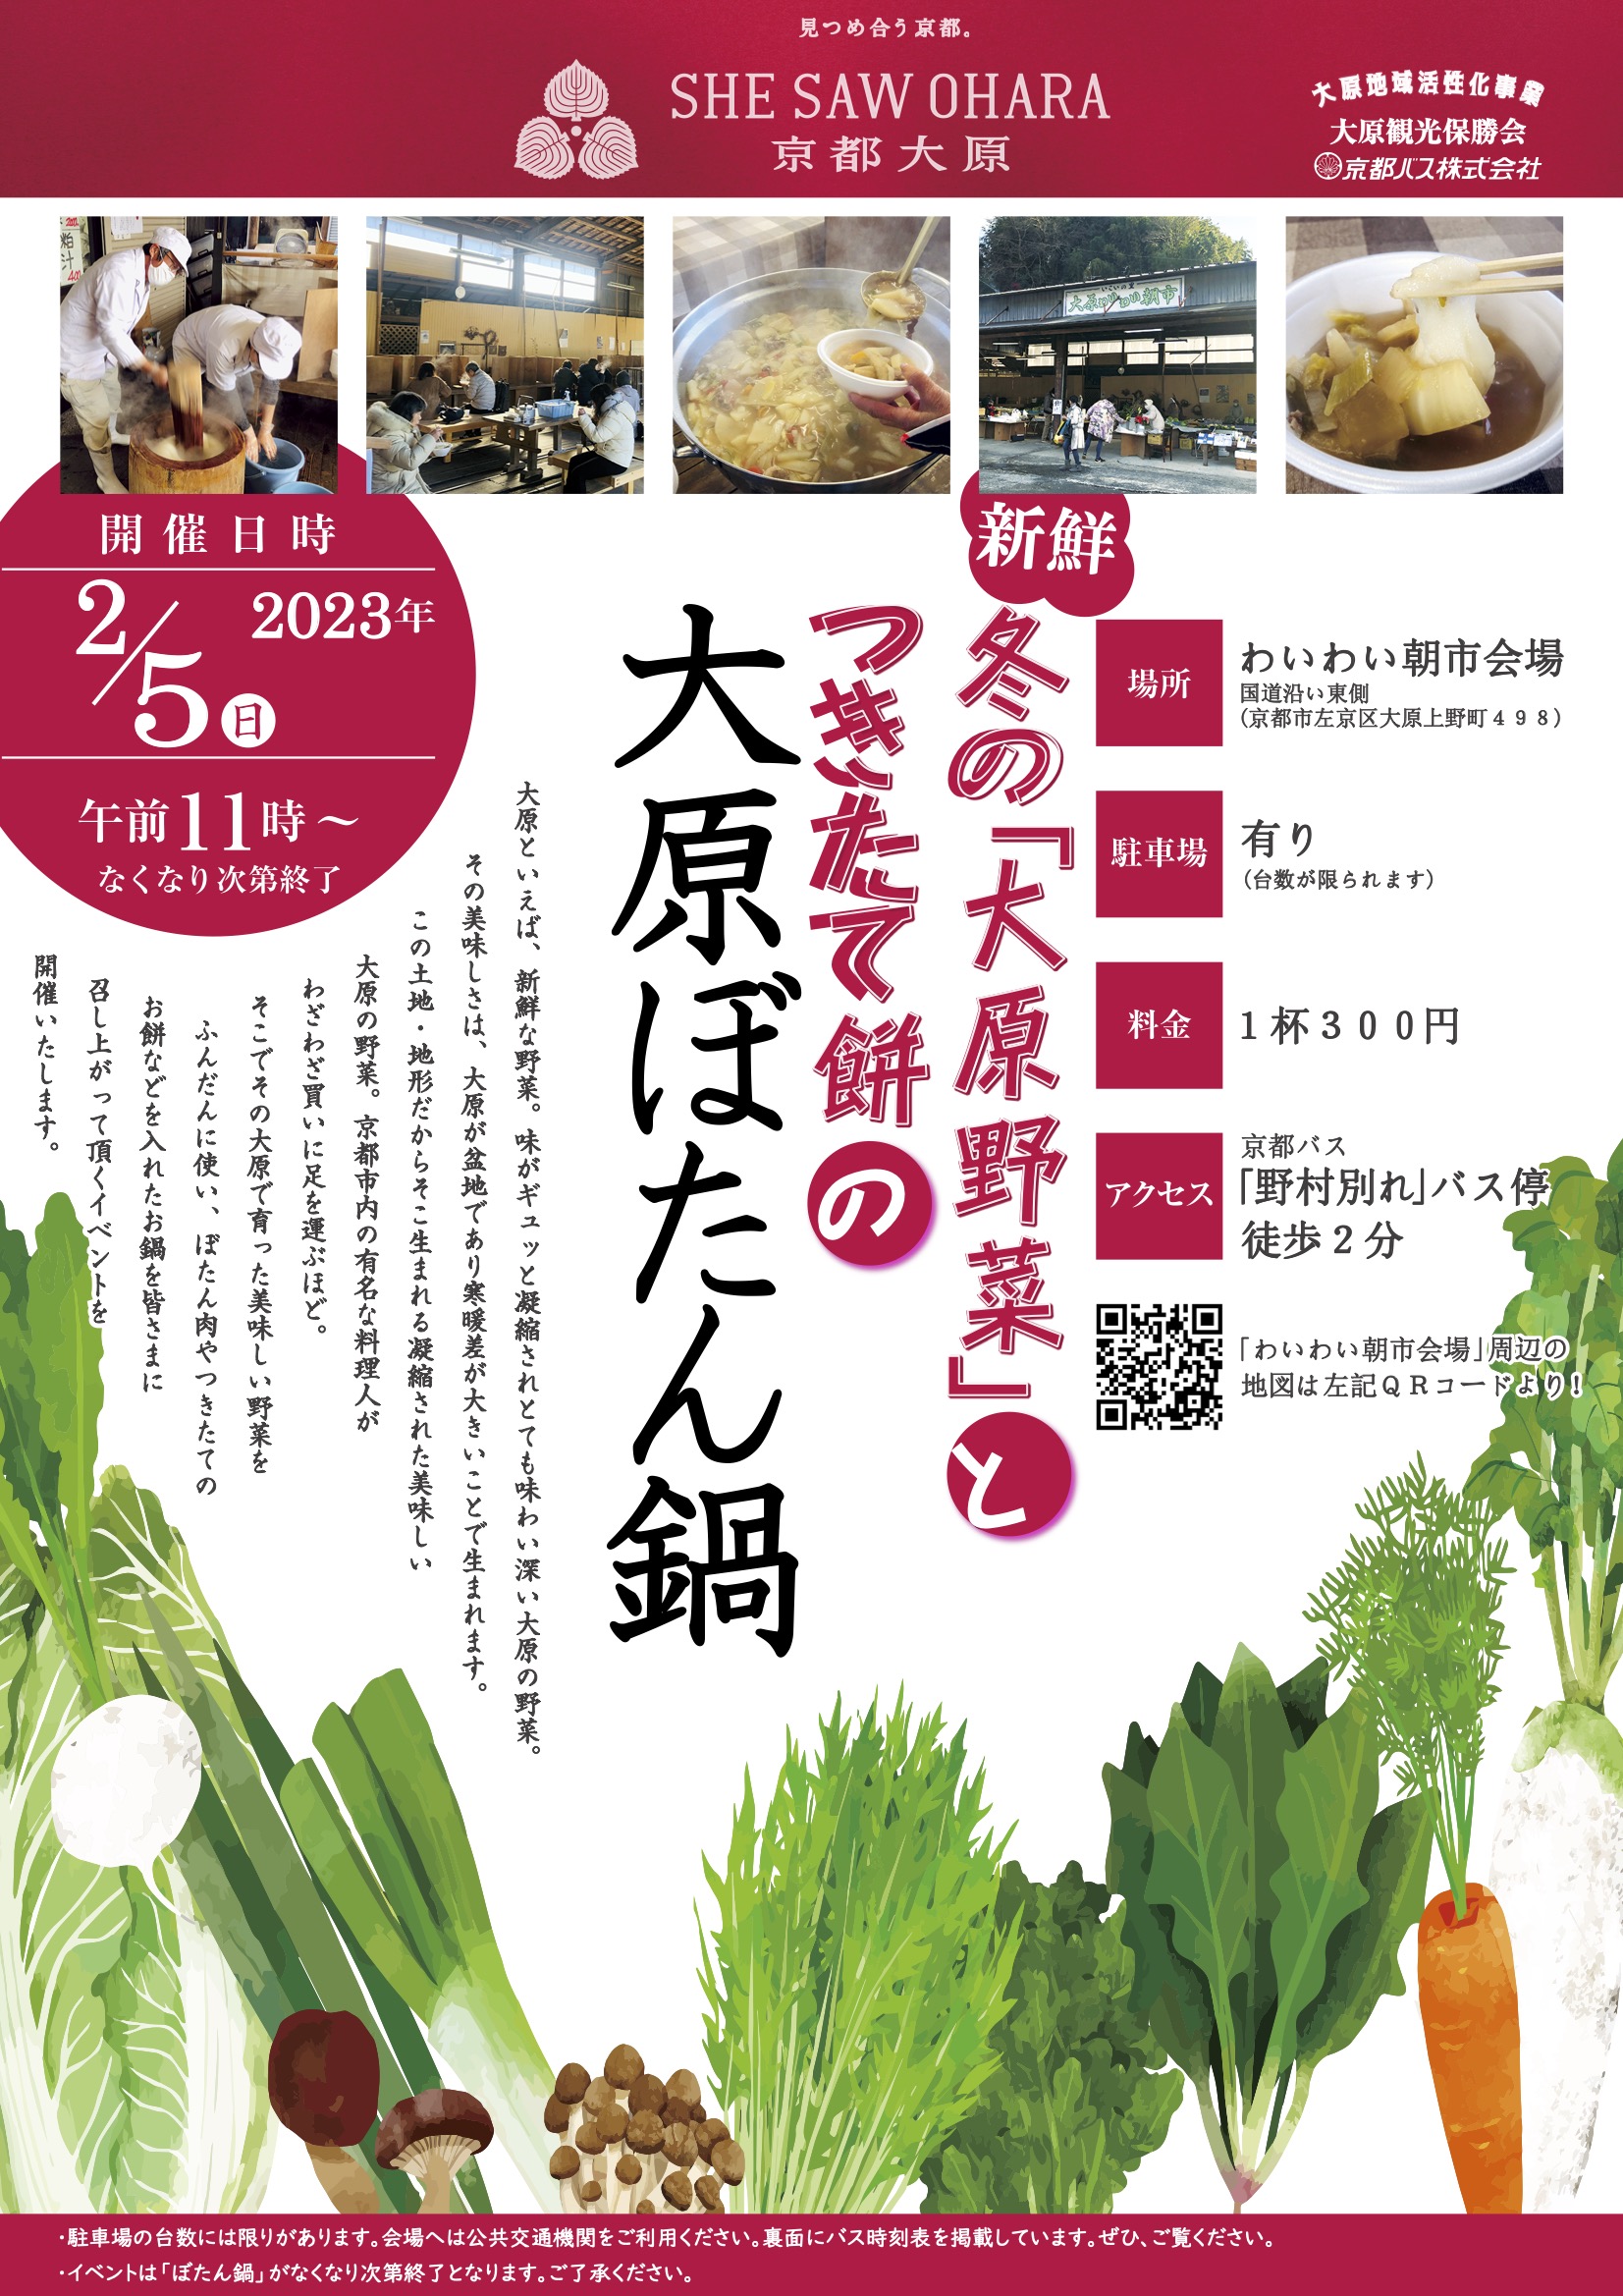 【2/5】「大原ぼたん鍋」 美味しい大原野菜と里山の味覚を楽しむ野外イベント